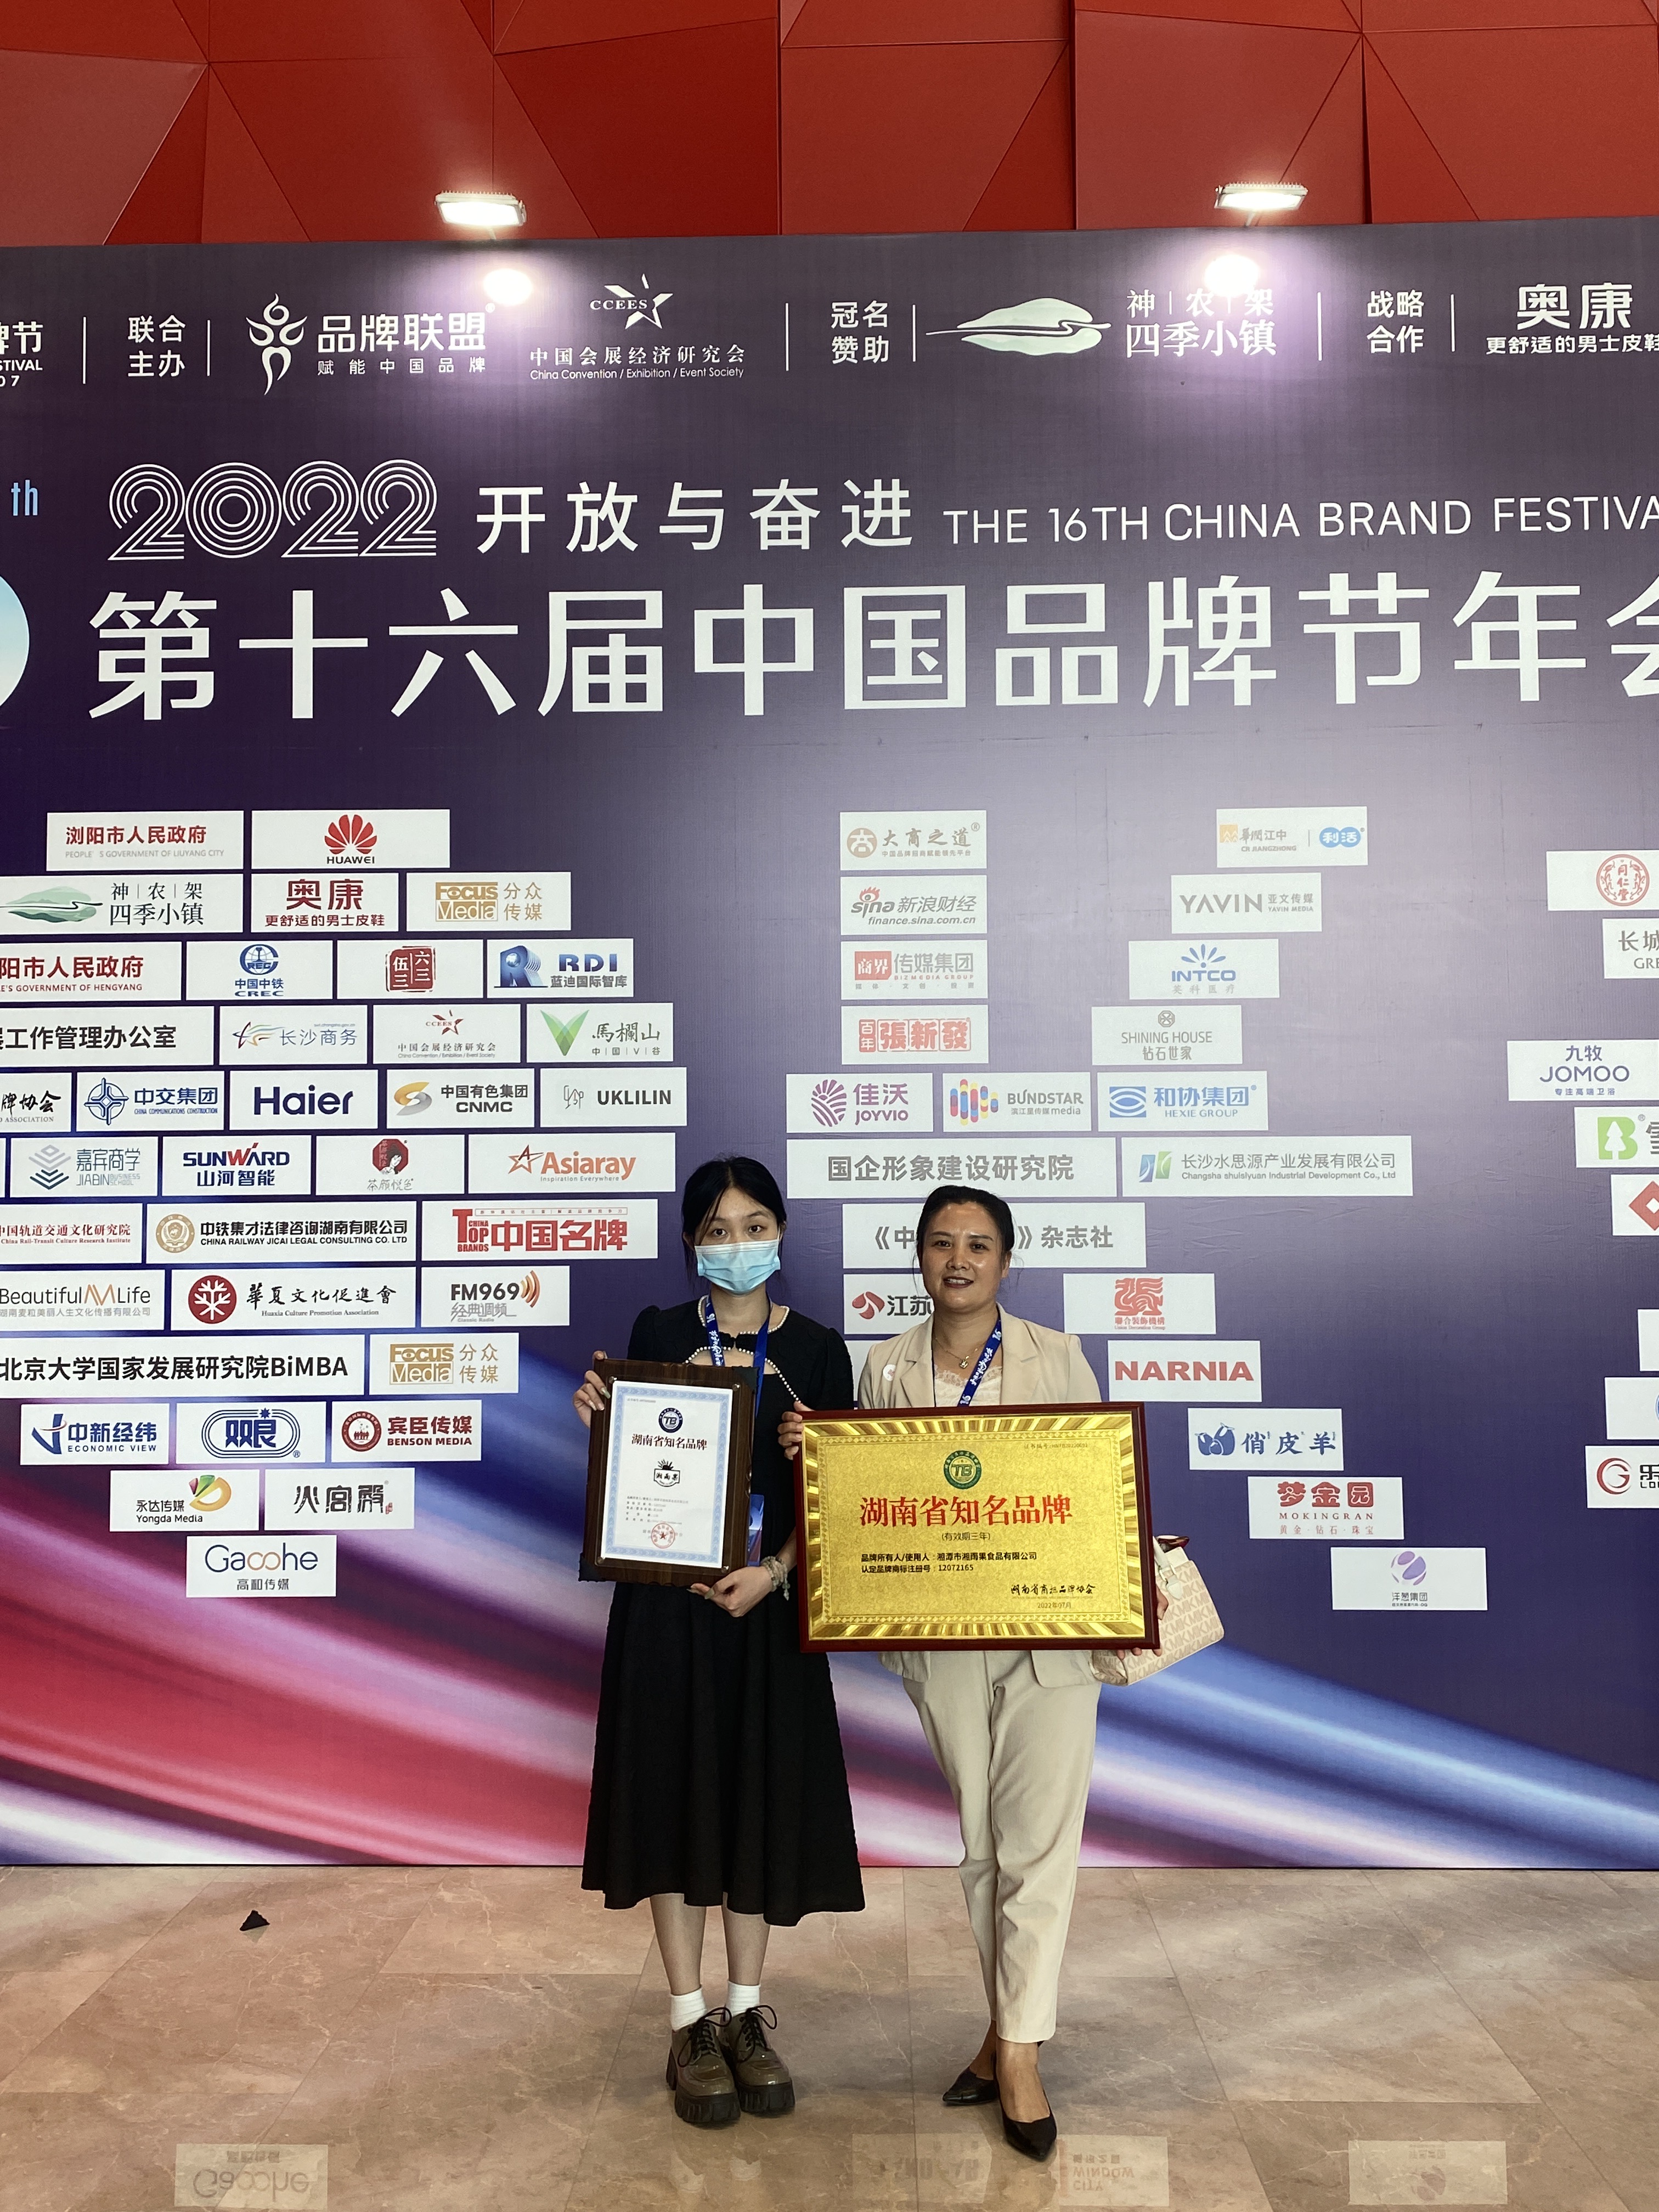 اڳواٽ تيار ڪيل ڊشز ٺاهيندڙ Xiang Yu Guo کي انعام ڏنو ويو هونان مشهور برانڊ